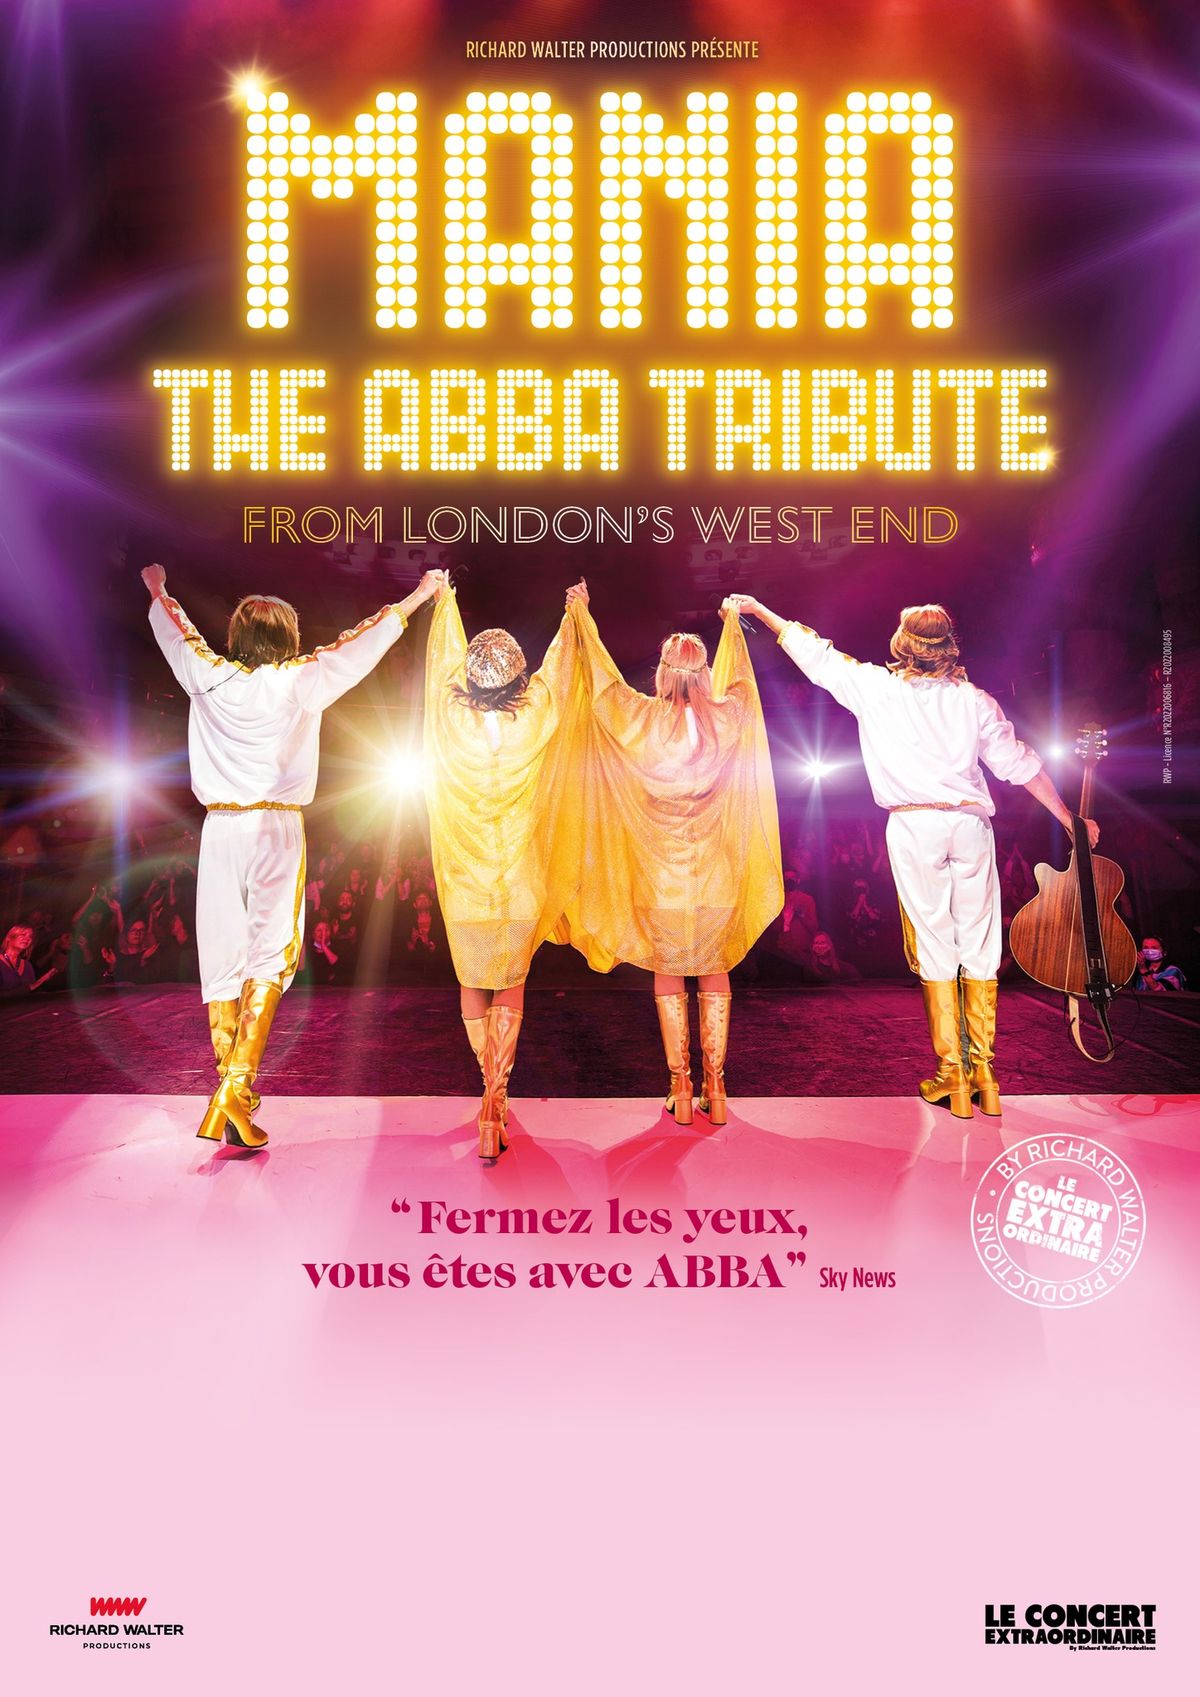 MANIA, the ABBA tribute \u00b7 Th\u00e9\u00e2tre S\u00e9bastopol, Lille 